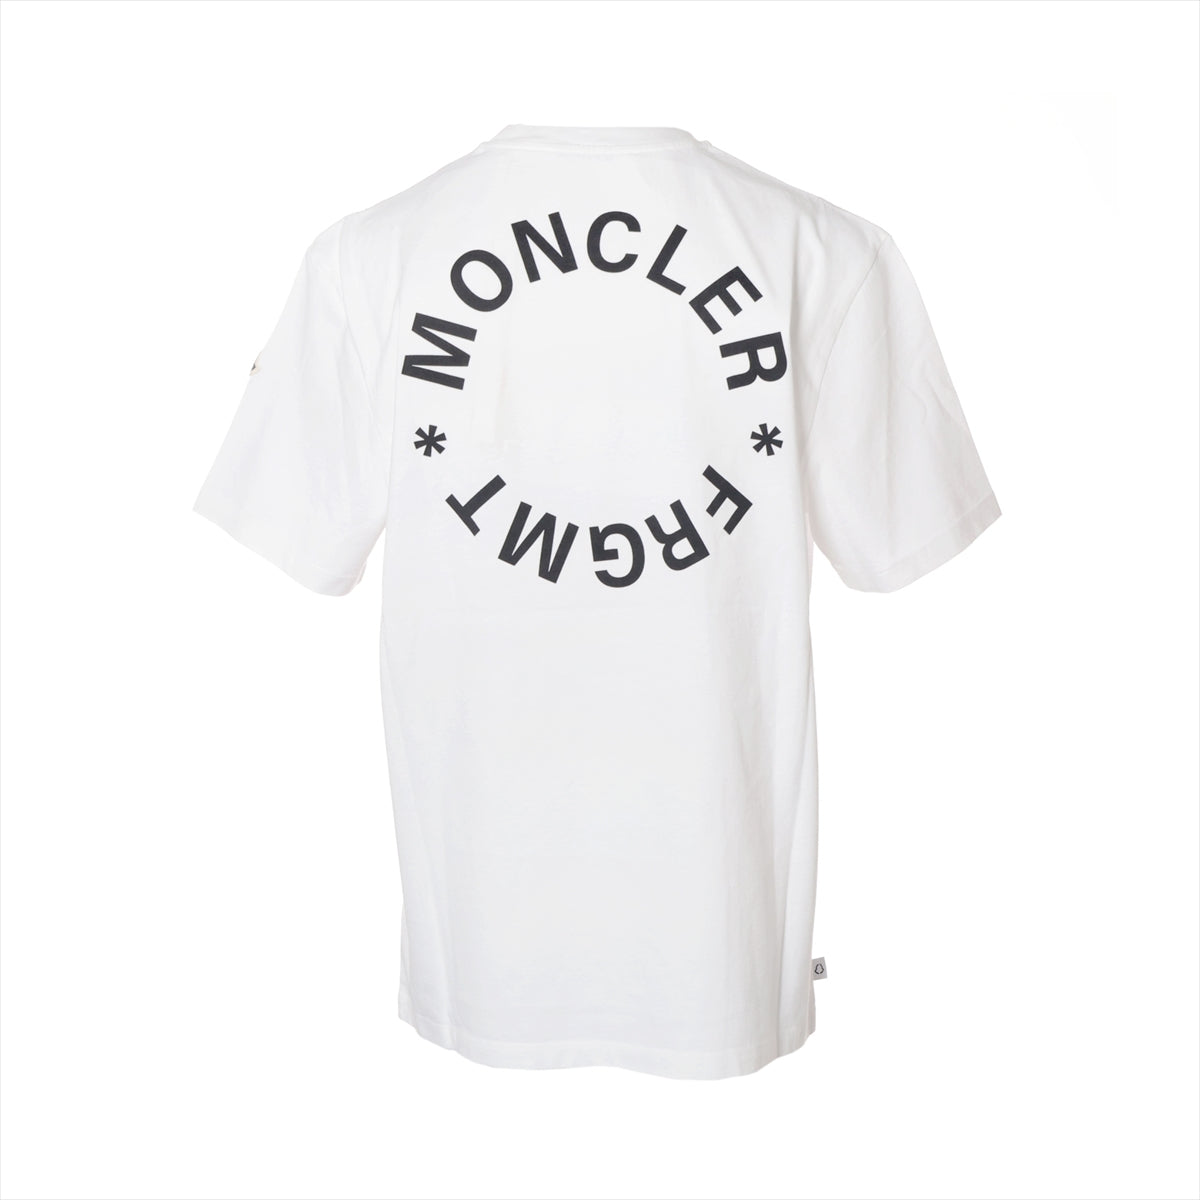 モンクレールジーニアス フラグメント 22年 コットン Tシャツ L メンズ ホワイト  I209U8C00002 M3265